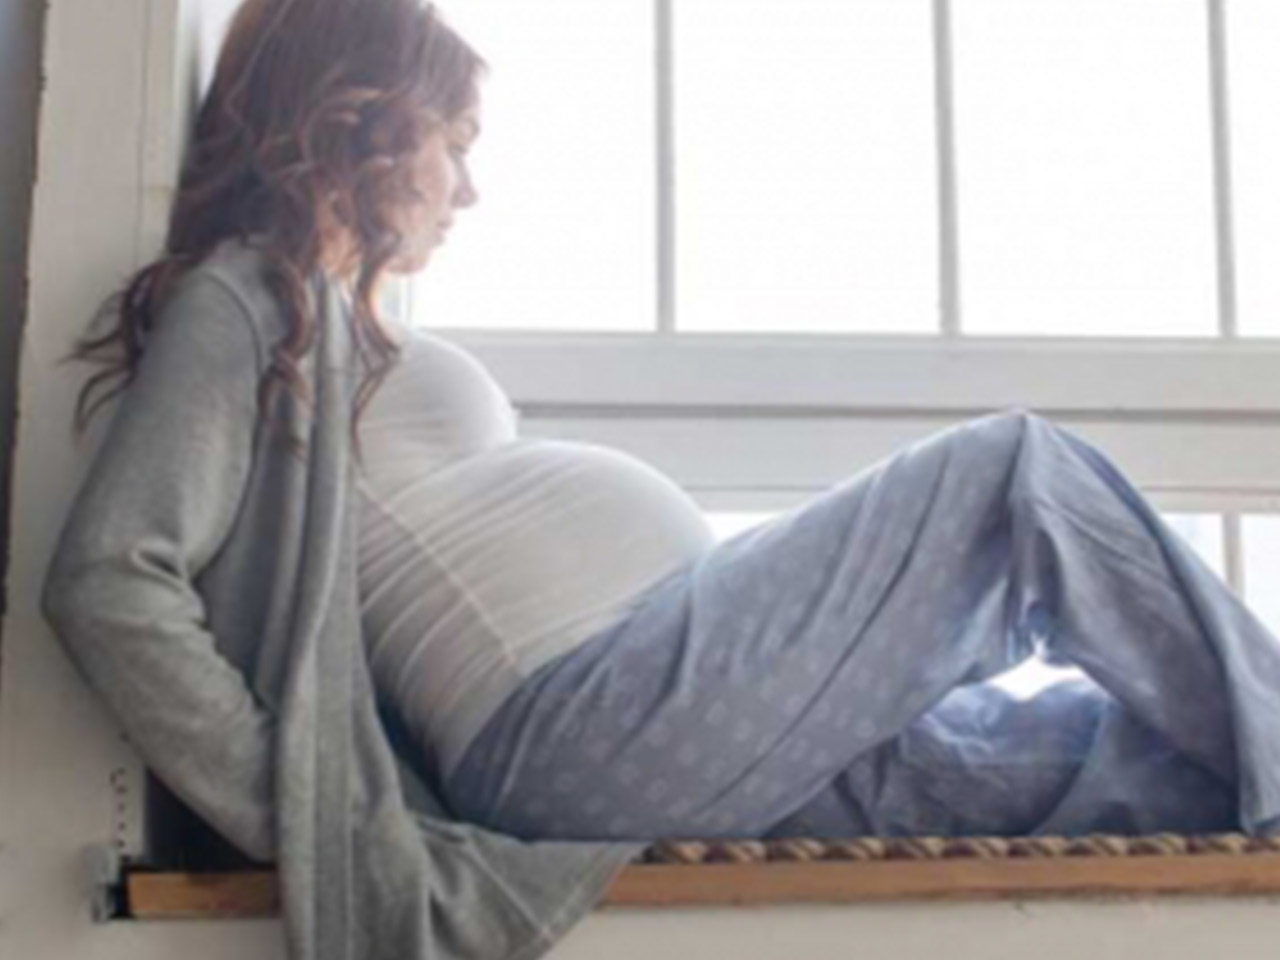 Frau, die nach einer Fehlgeburt erneut schwanger geworden ist und auf ihren Geburtstermin wartet.